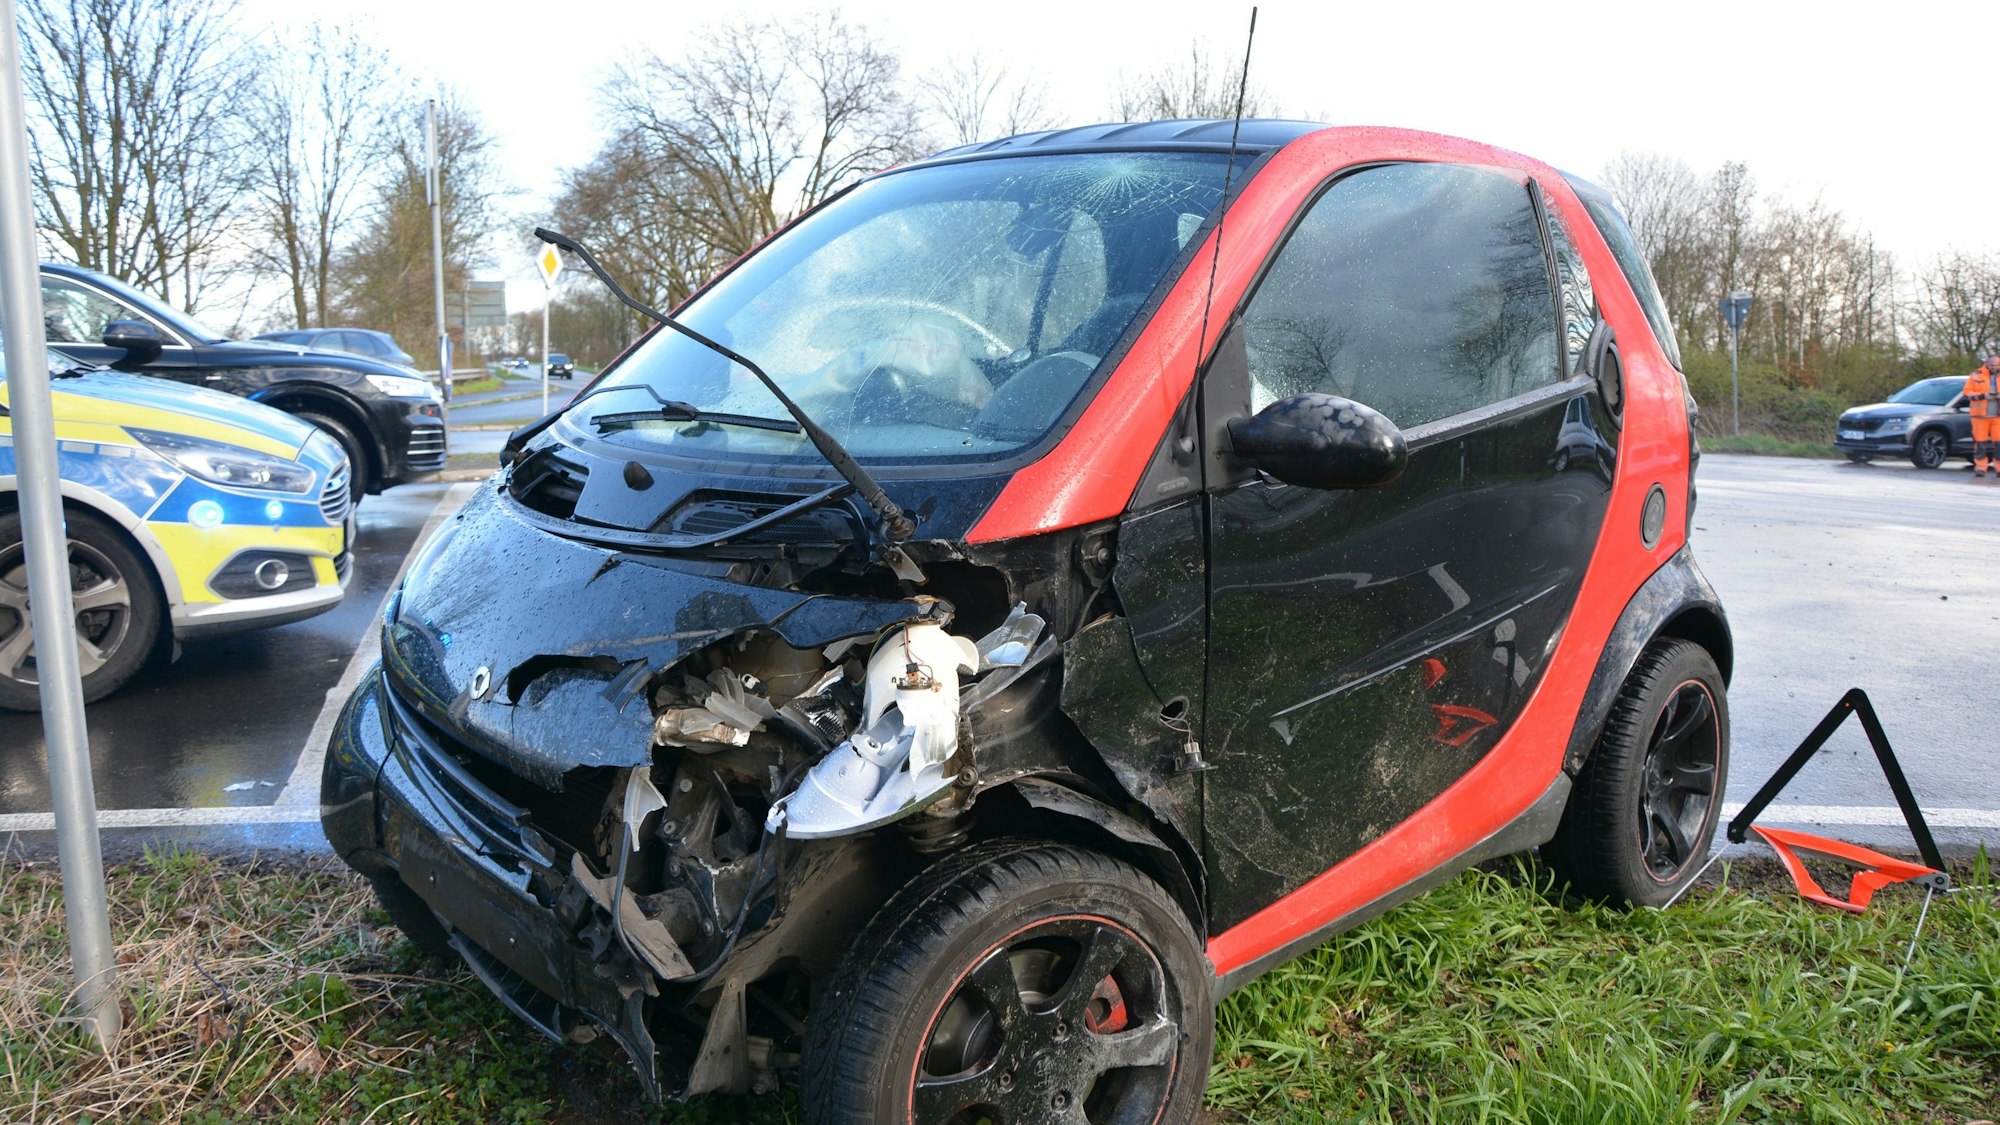 Das Bild zeigt einen beschädigten Kleinwagen, einen Smart. Zwei Personen wurden bei dem Unfall leicht verletzt.